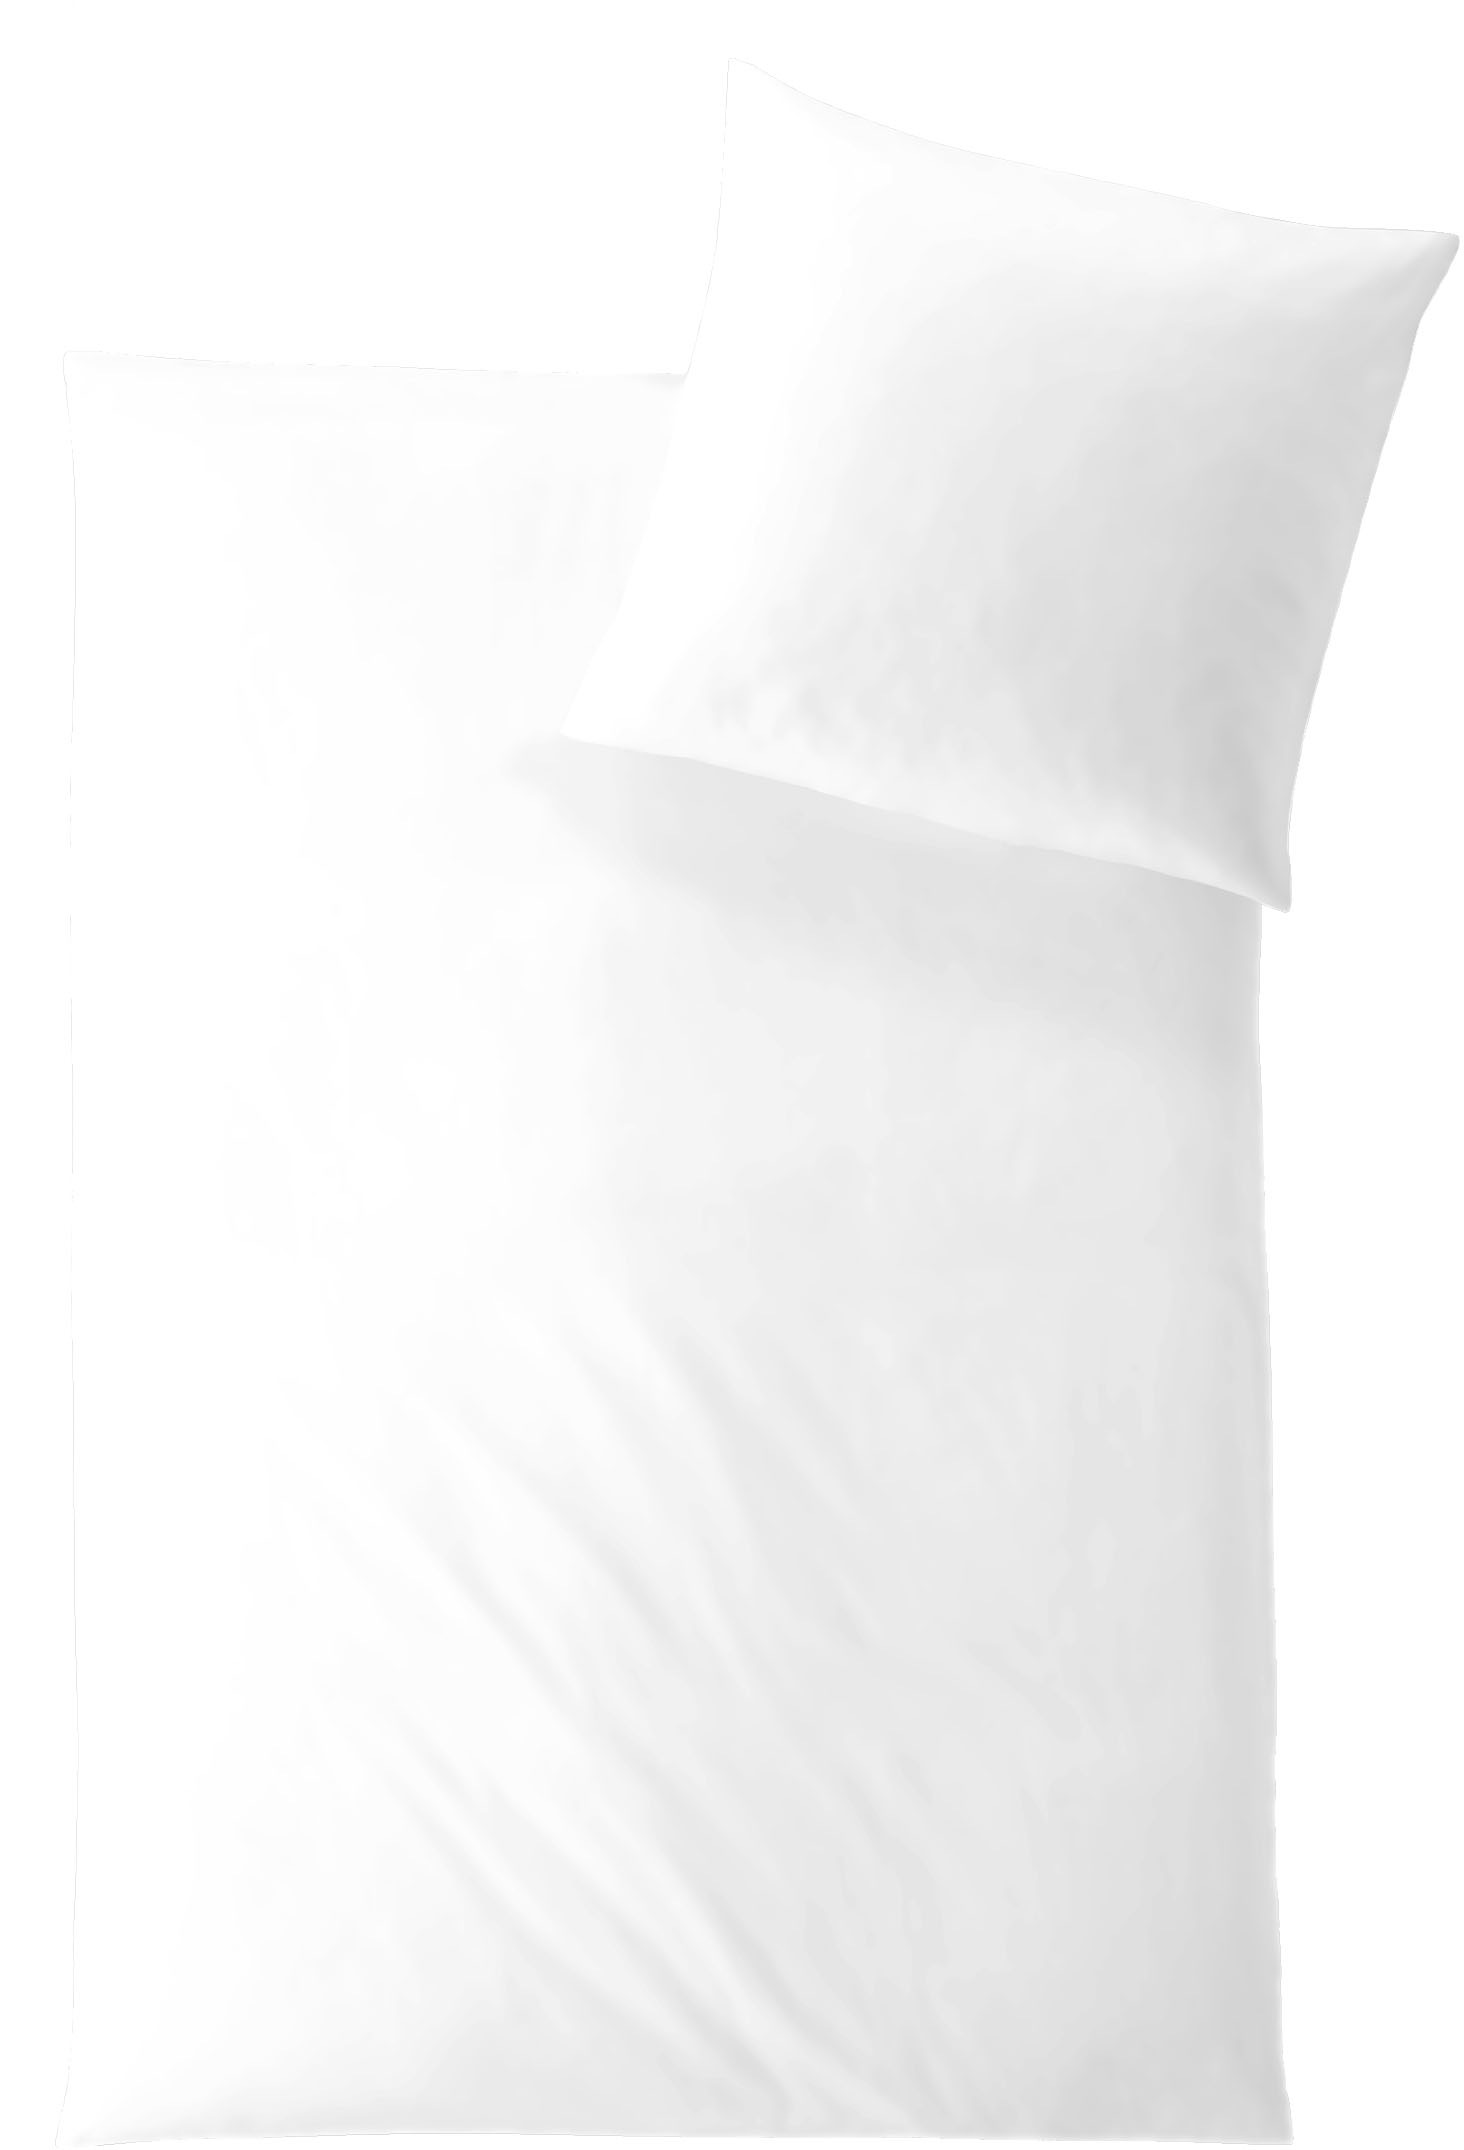 Hefel Bettwäsche »Classic Uni in Gr. 135x200 oder 155x220 cm«, Bettwäsche aus TENCEL™, unifarbene Bettwäsche mit Reißverschluss